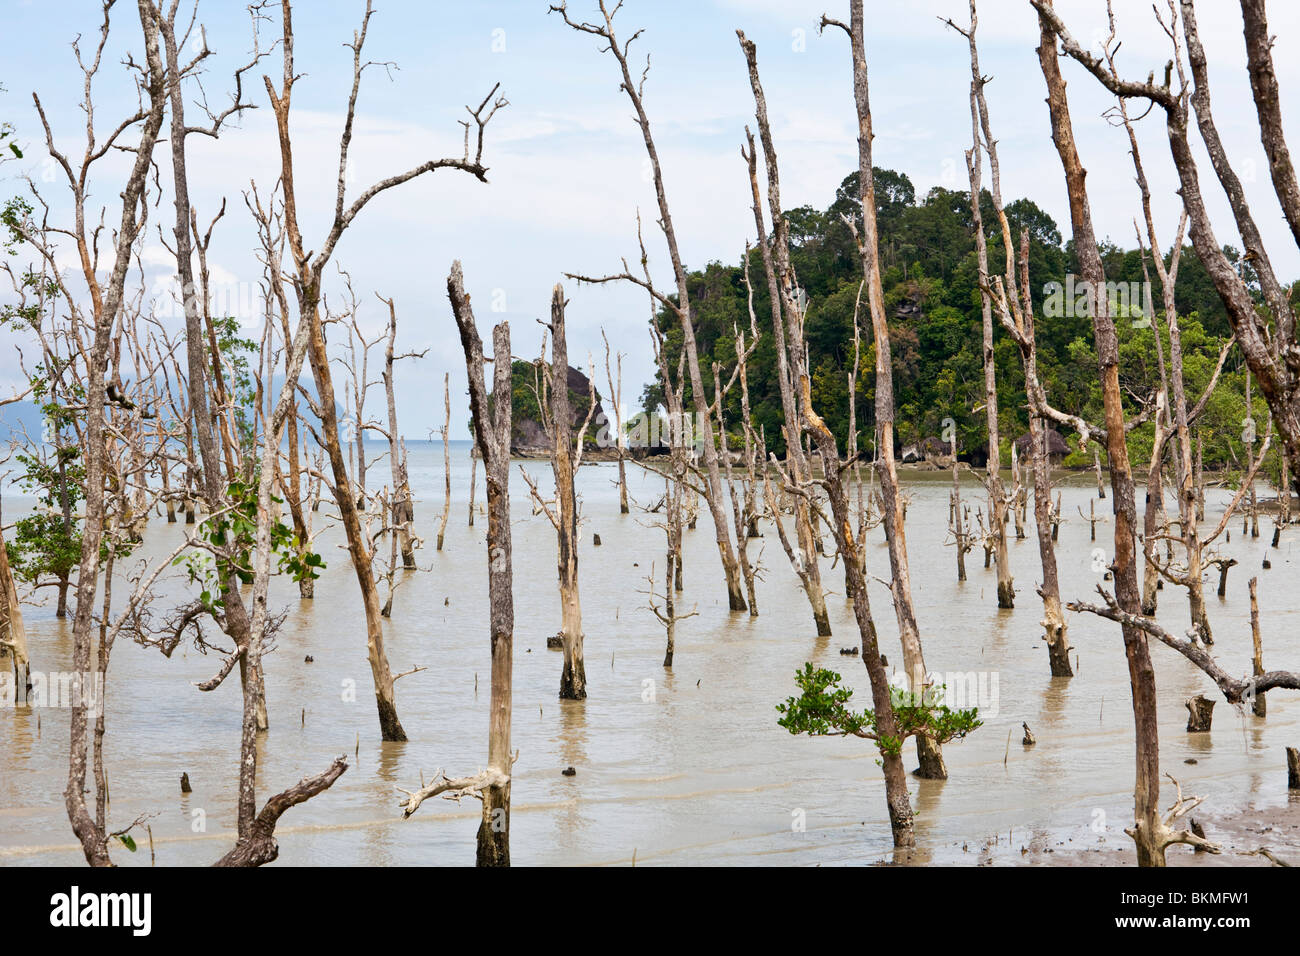 Les mangroves au parc national de Bako. Créé en 1957, le parc est le plus ancien de Sarawak. Kuching, Sarawak, Bornéo, Malaisie Banque D'Images